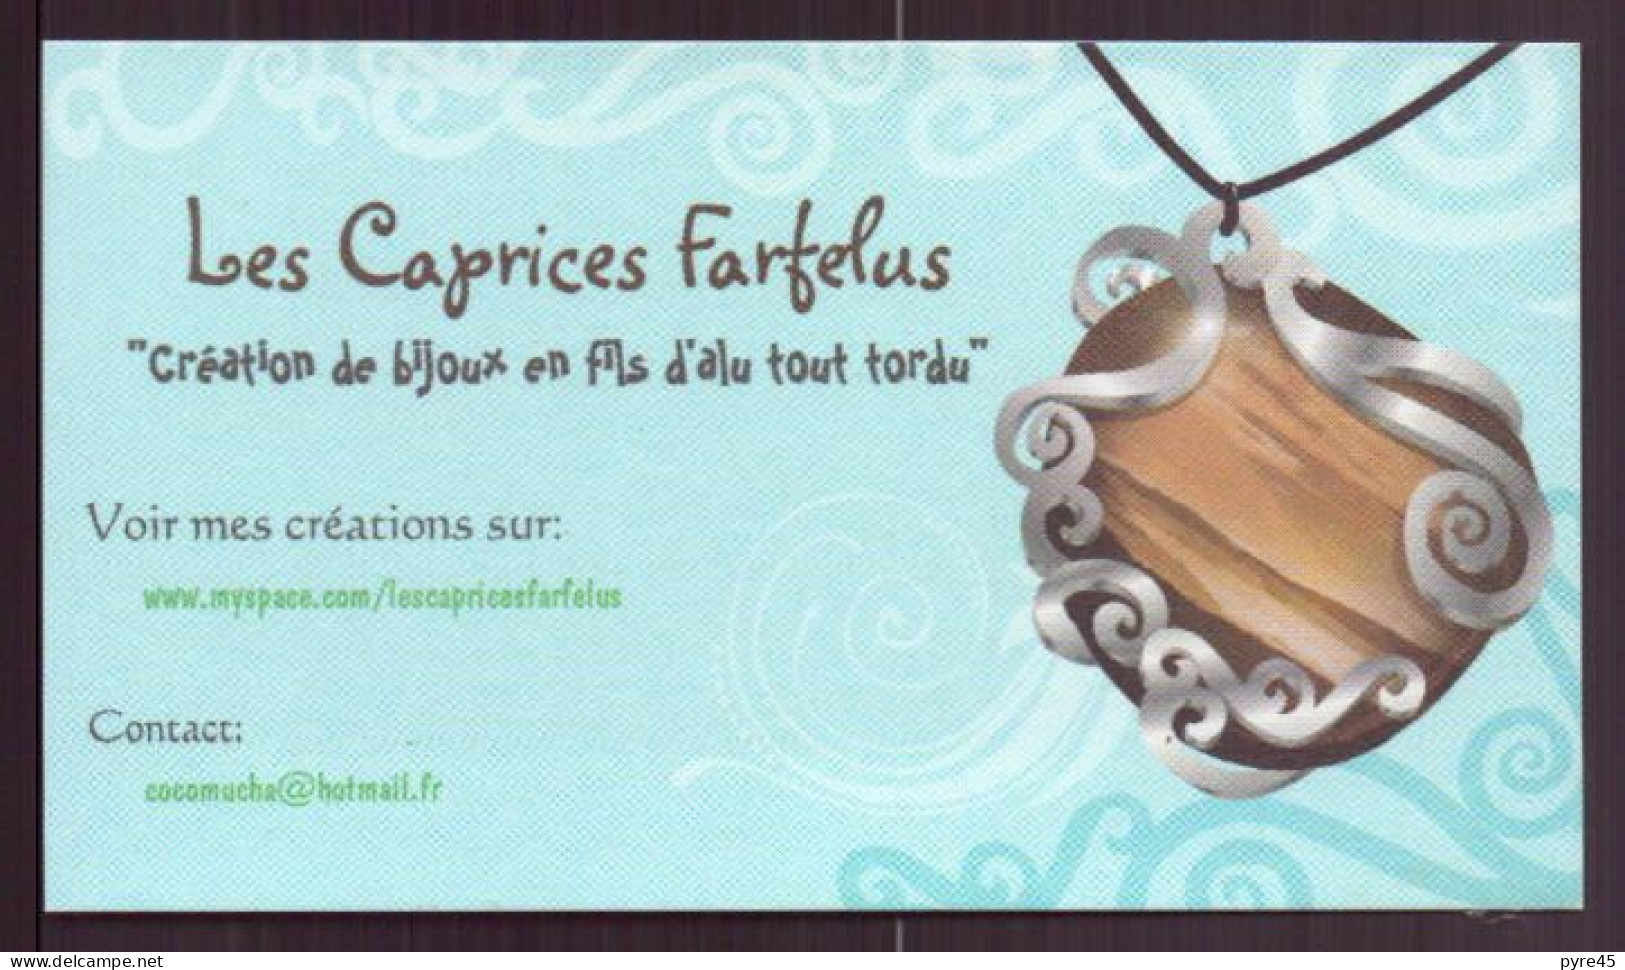 CARTE PUBLICITAIRE LES CAPRICES ARFELUS CREATION DE BIJOUX EN FIL D ALU TOUT TORDU - Cartes De Visite